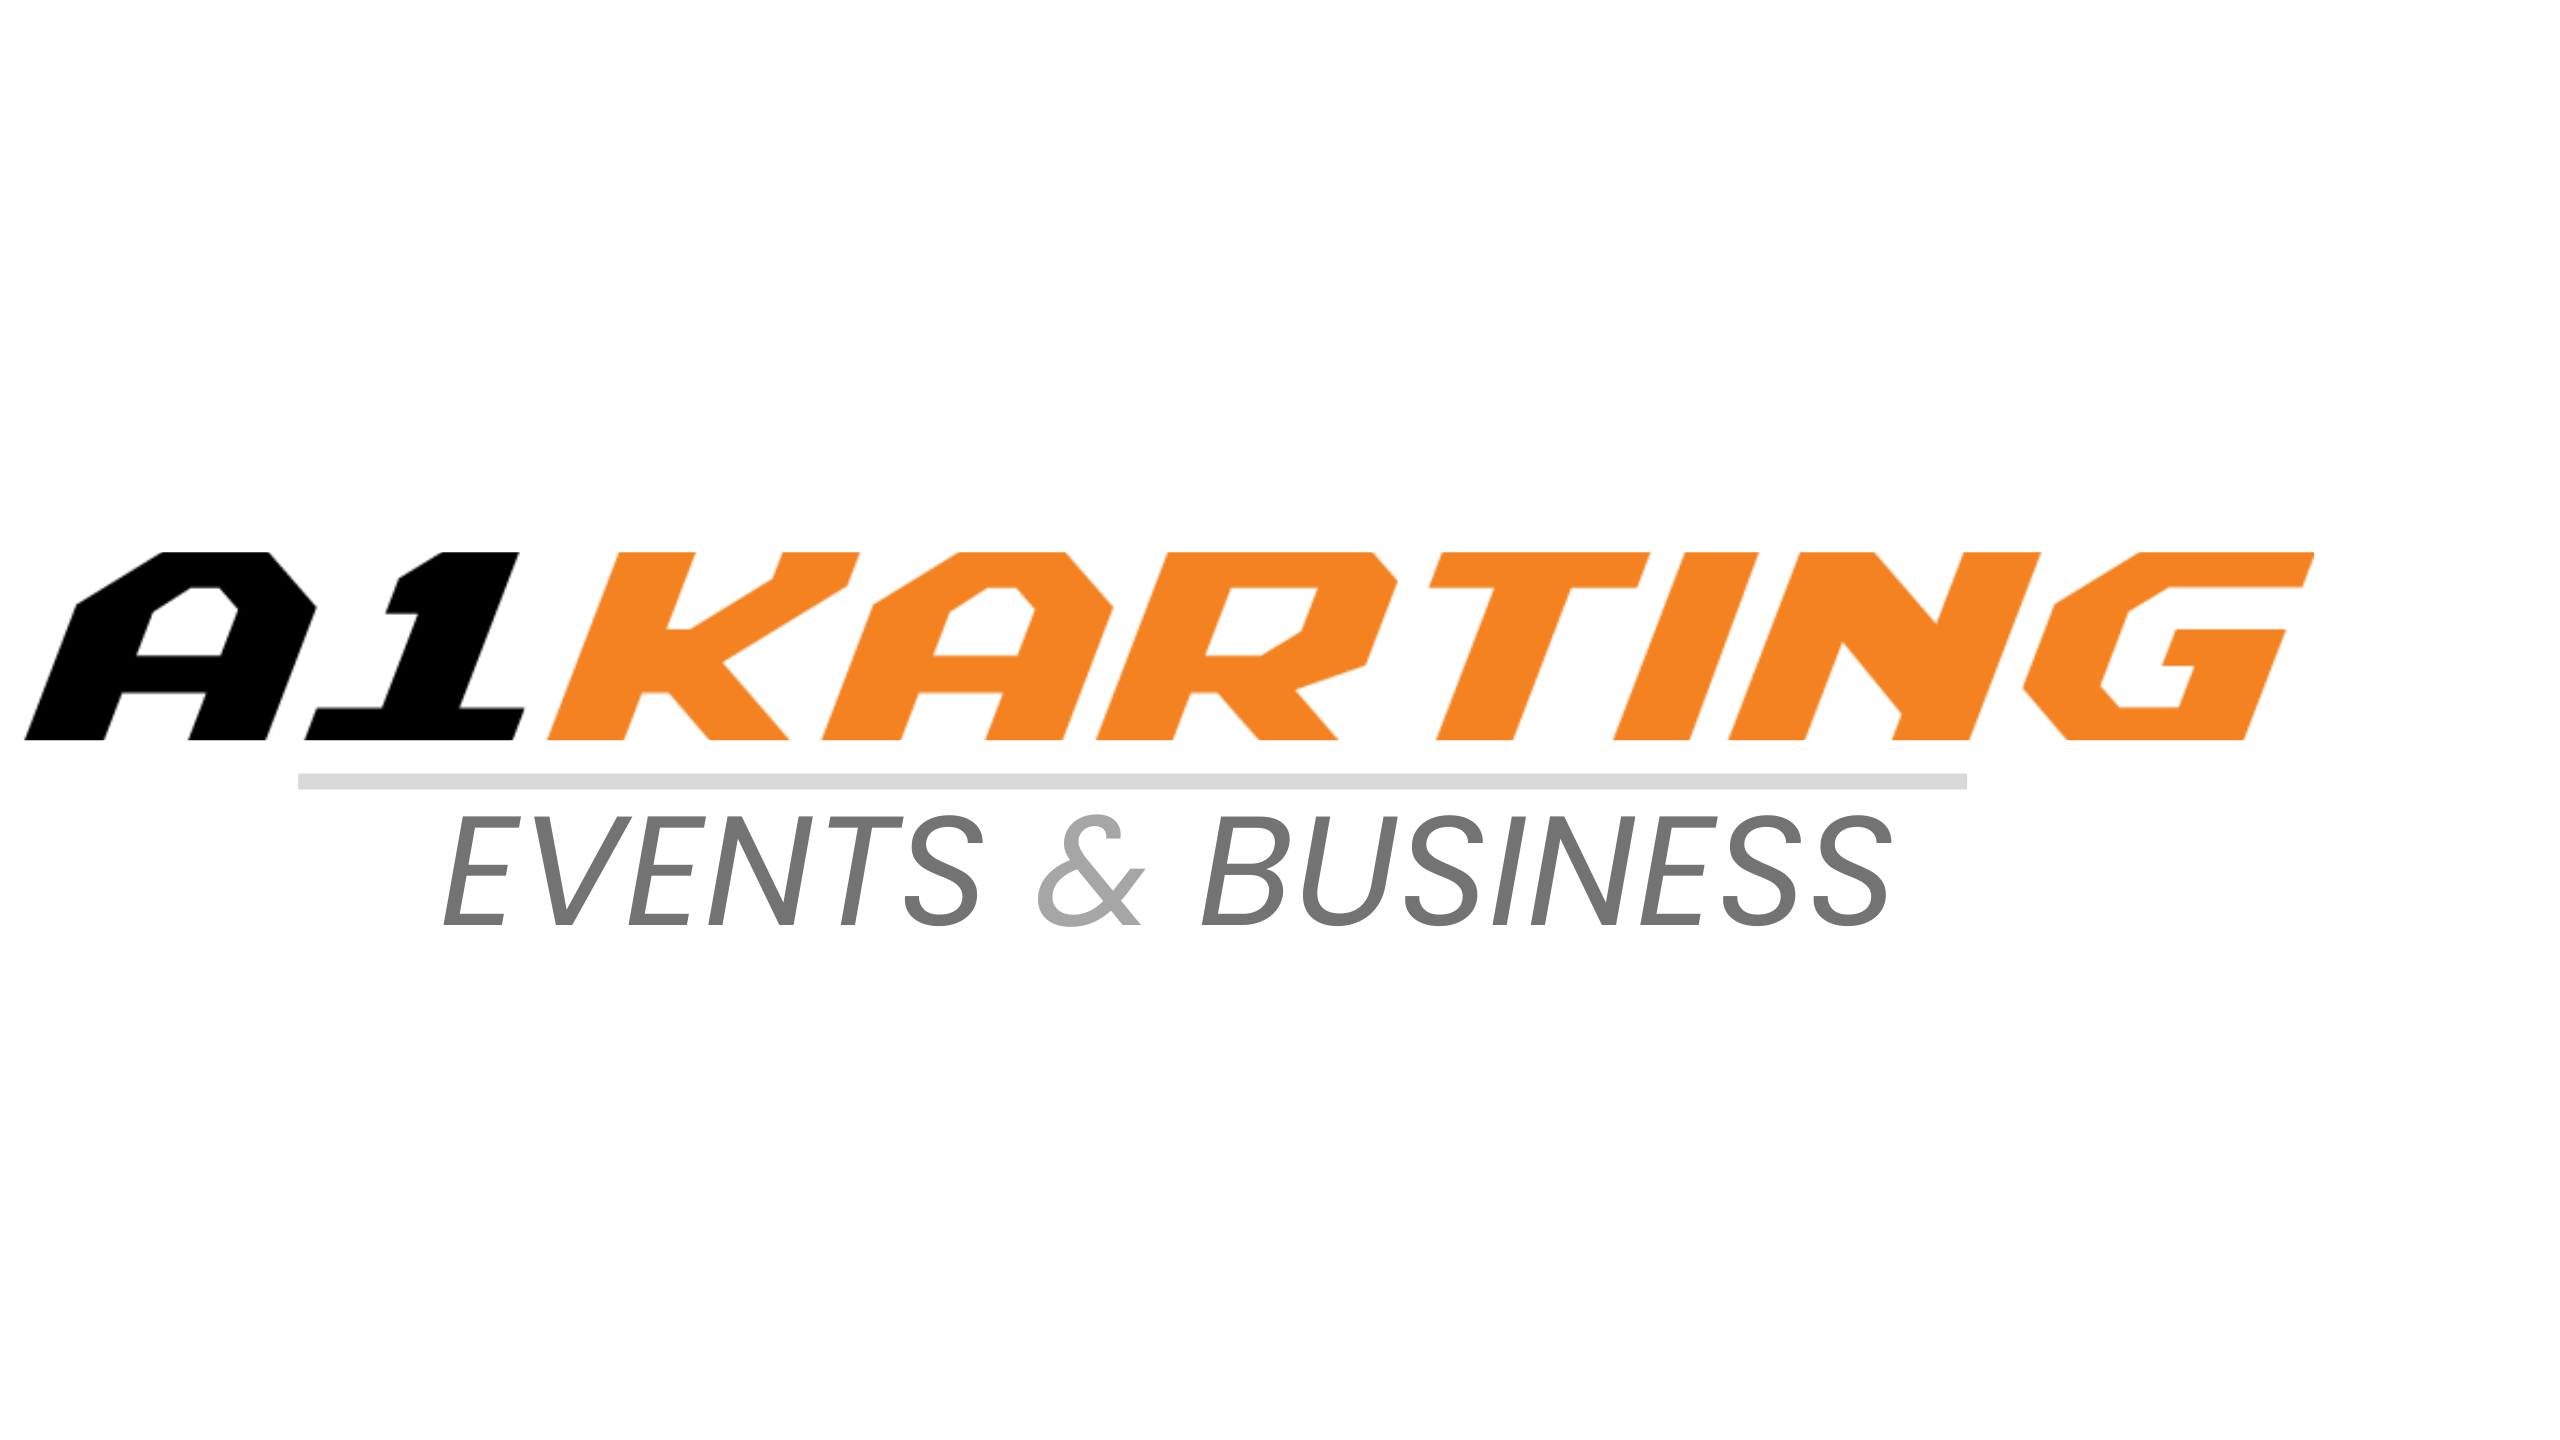 A1karting logo deskopt EVENT & BUSINESS (2560 x 1440 px)(3)